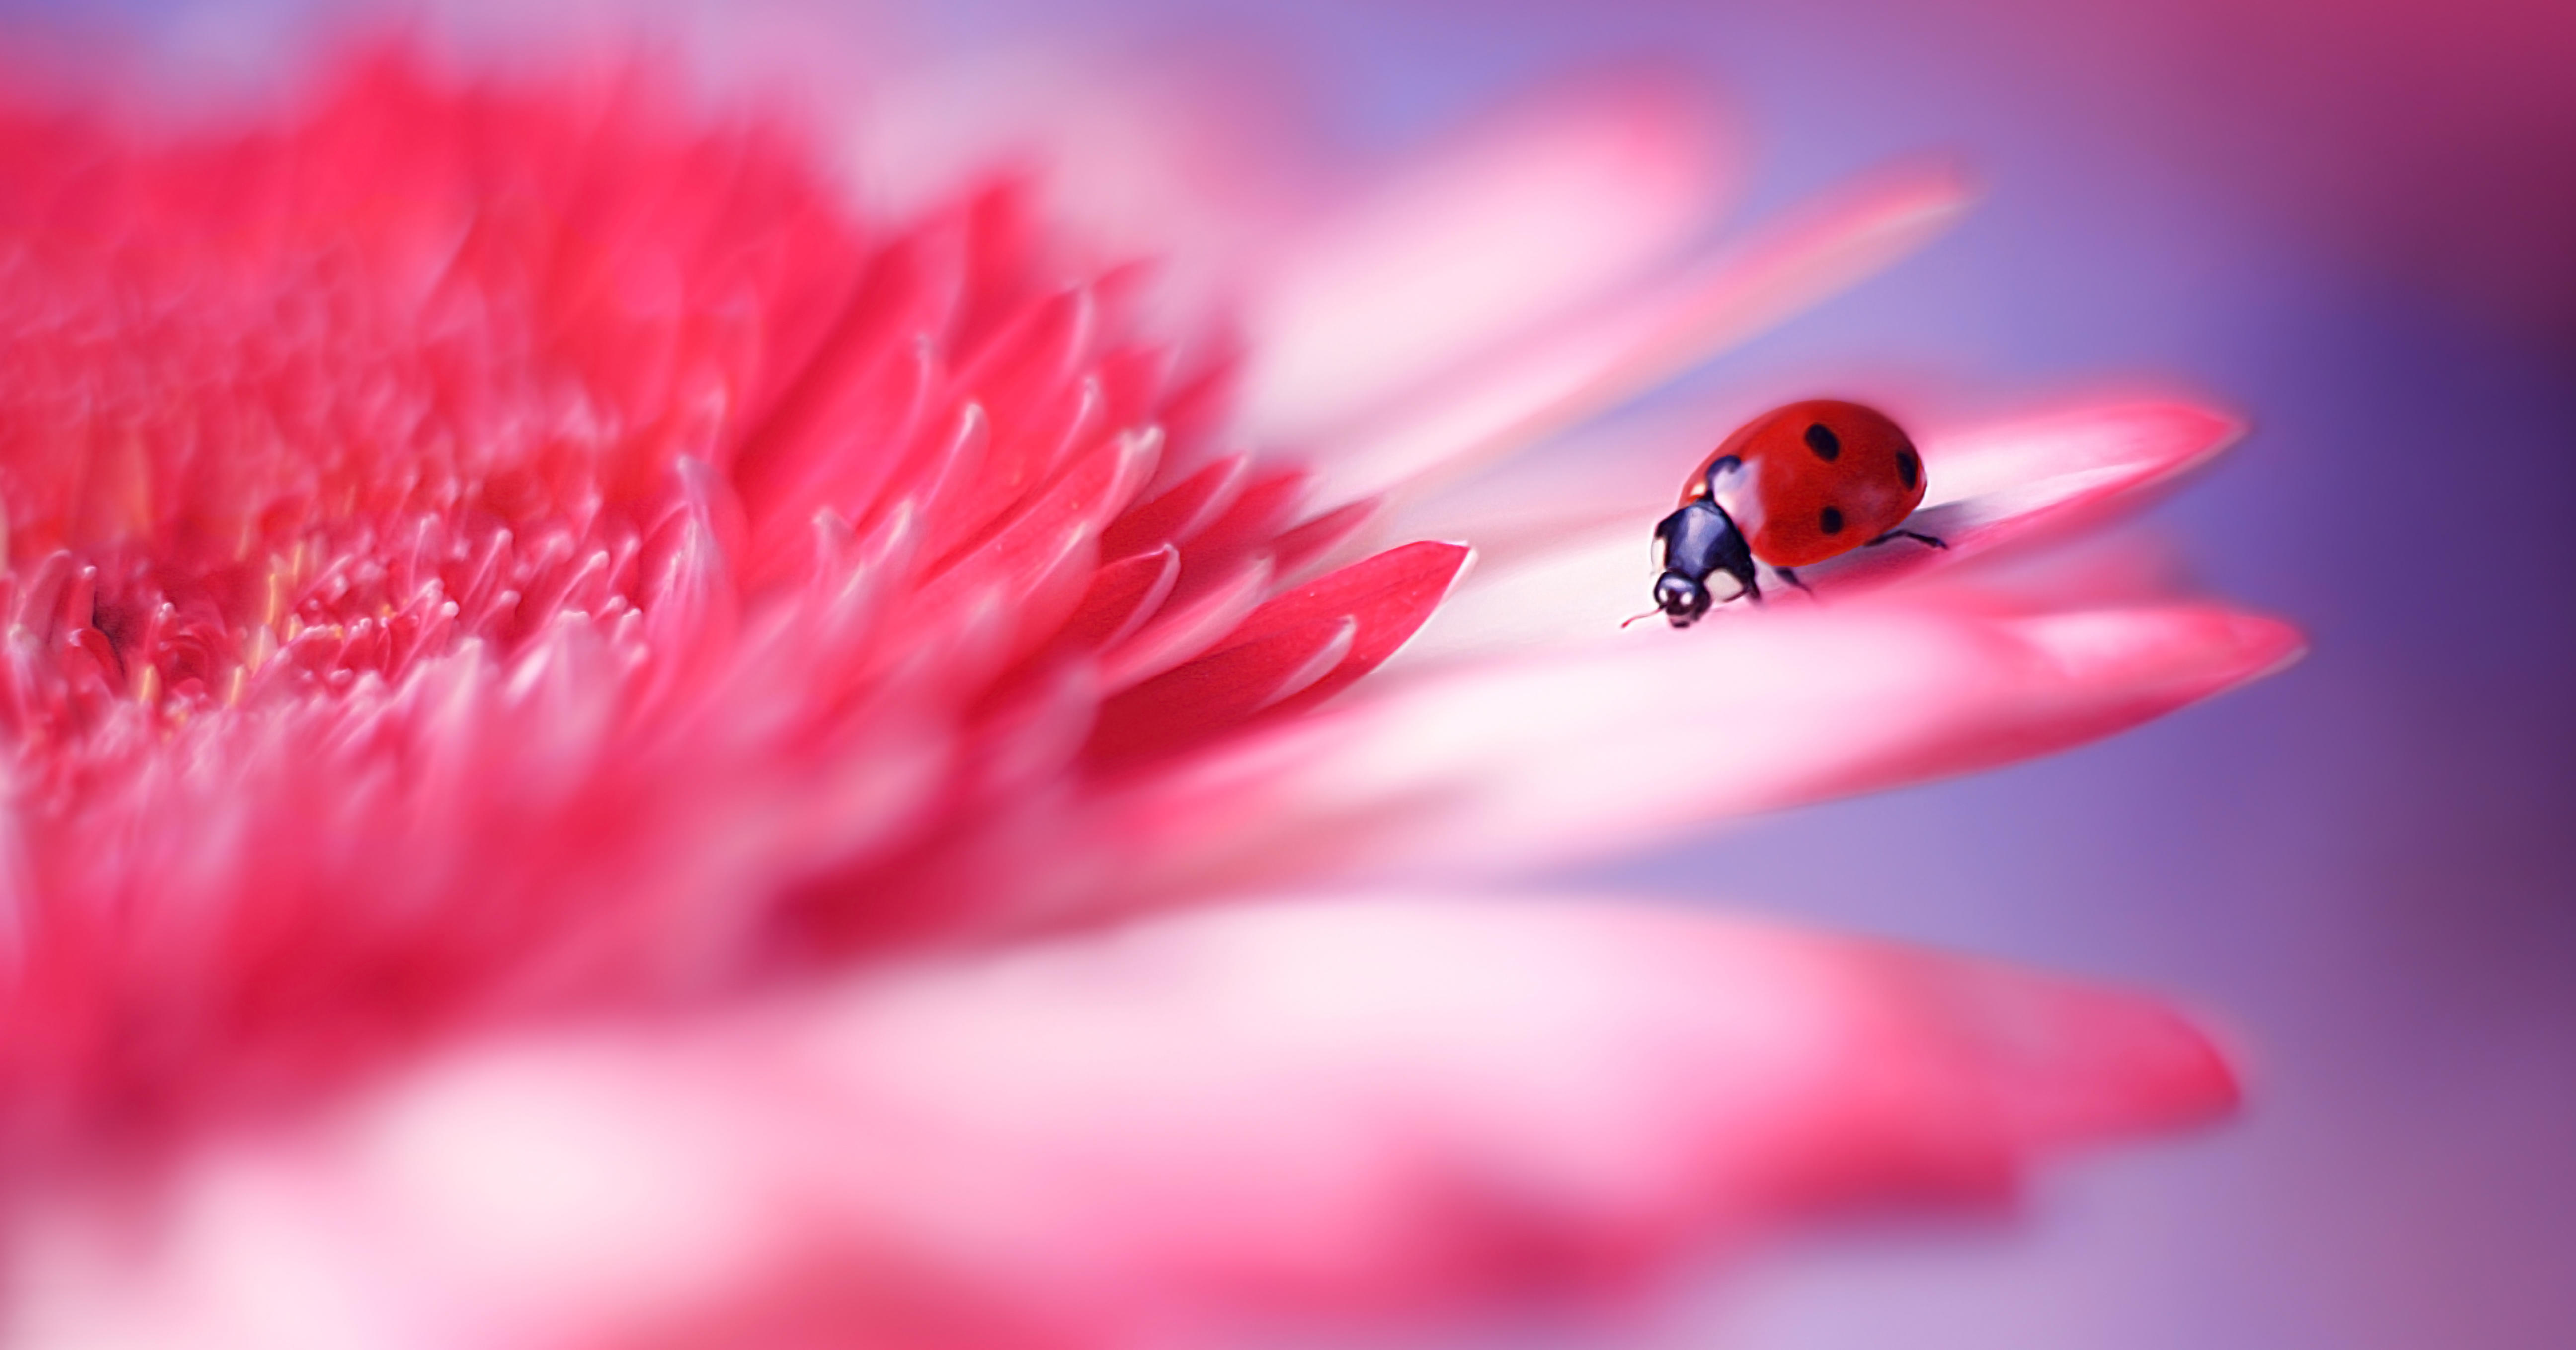 Wallpapers ladybug pink flower close-up on the desktop